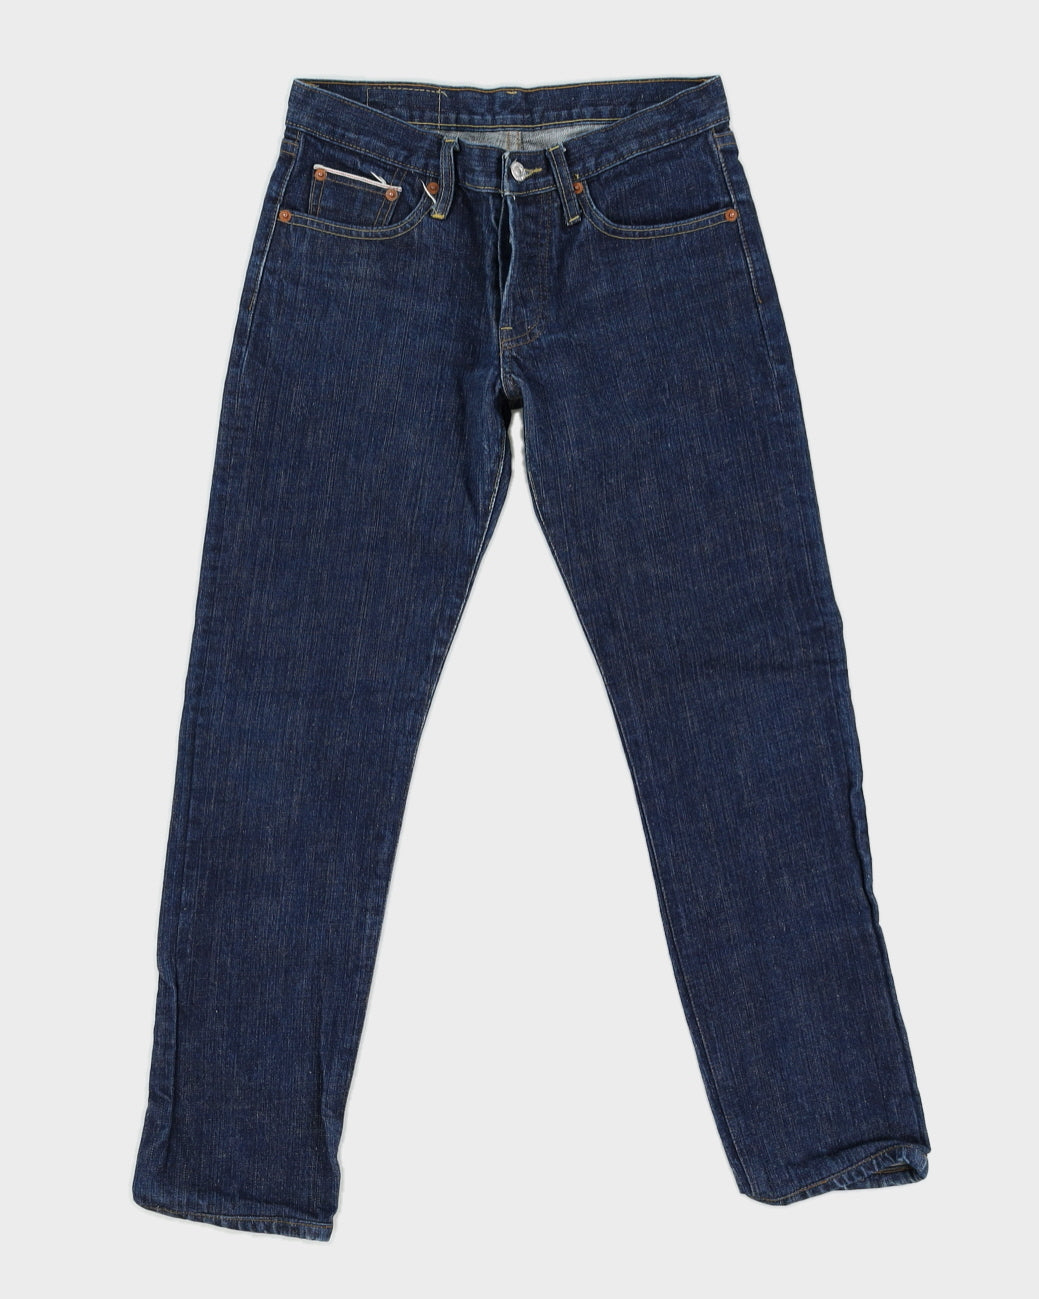 Vintage 90s Levi's Big E Repro Selvedge Blue Jeans - W28 L28